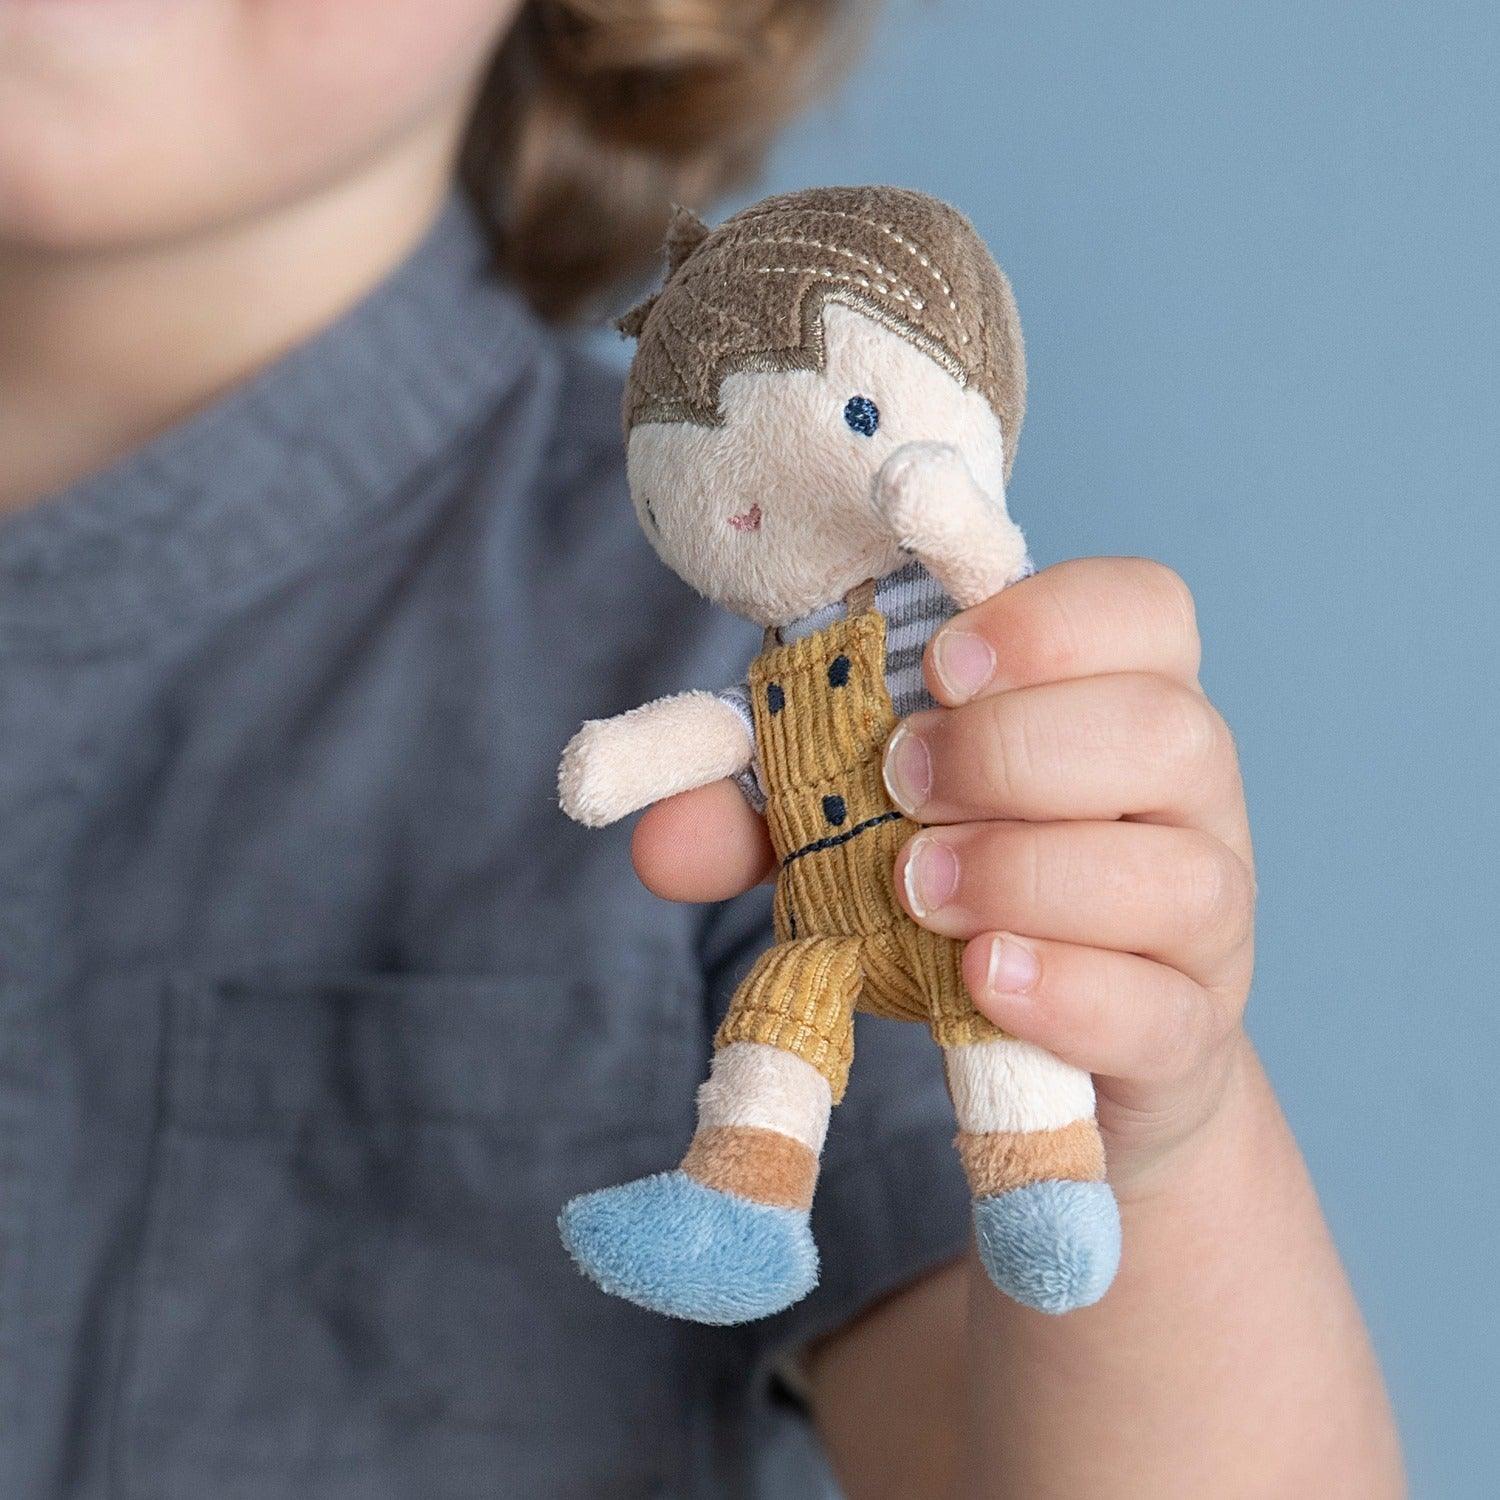 Little Dutch: materiałowa lalka Jim 10 cm - Noski Noski